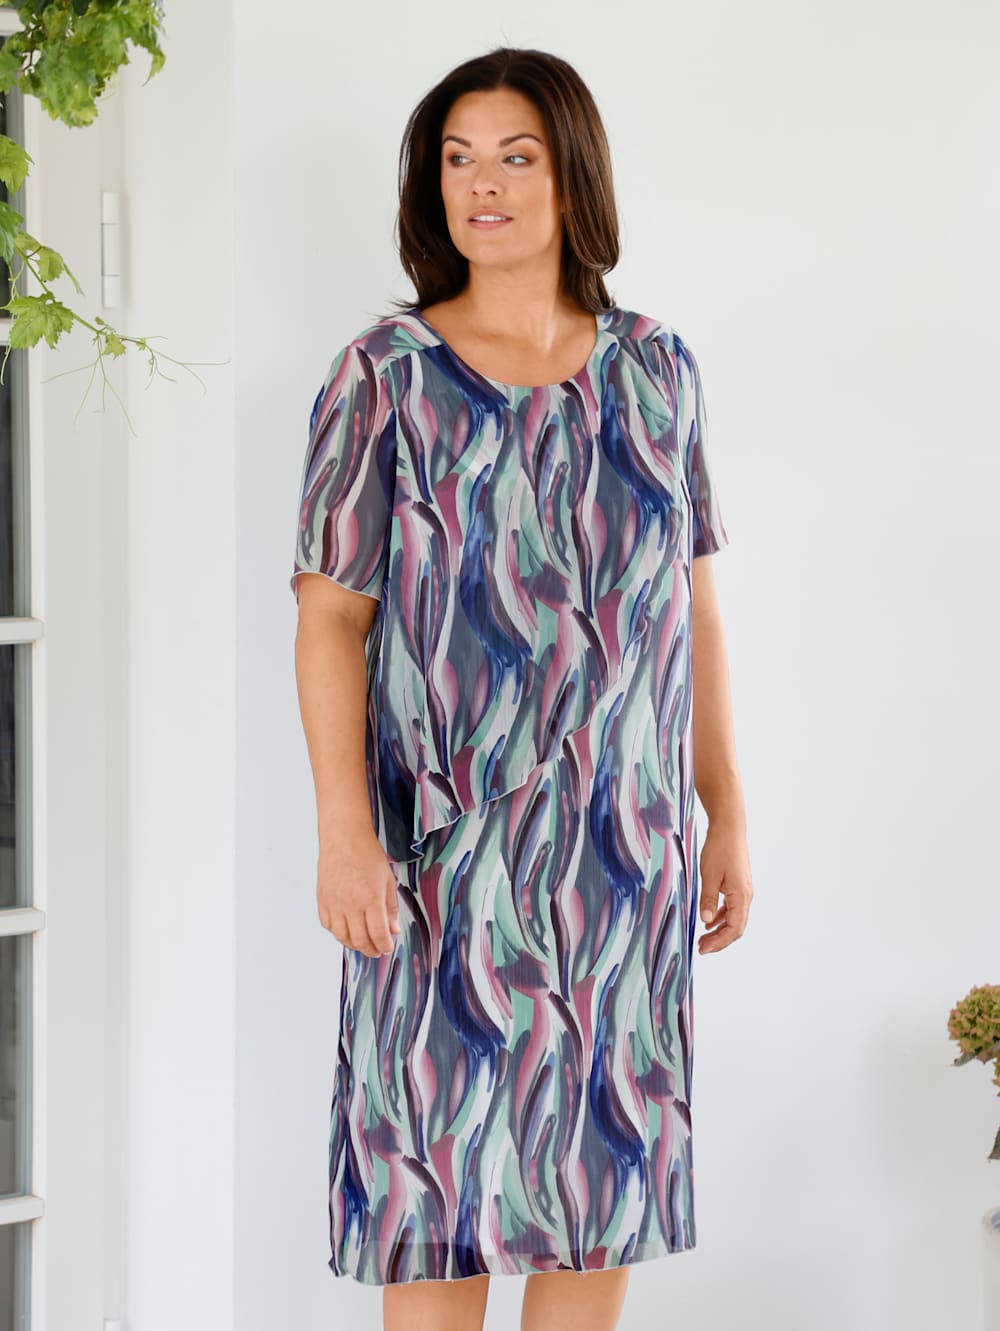 M Kleid von New Collection gr Mode Kleider Schlauchkleider 